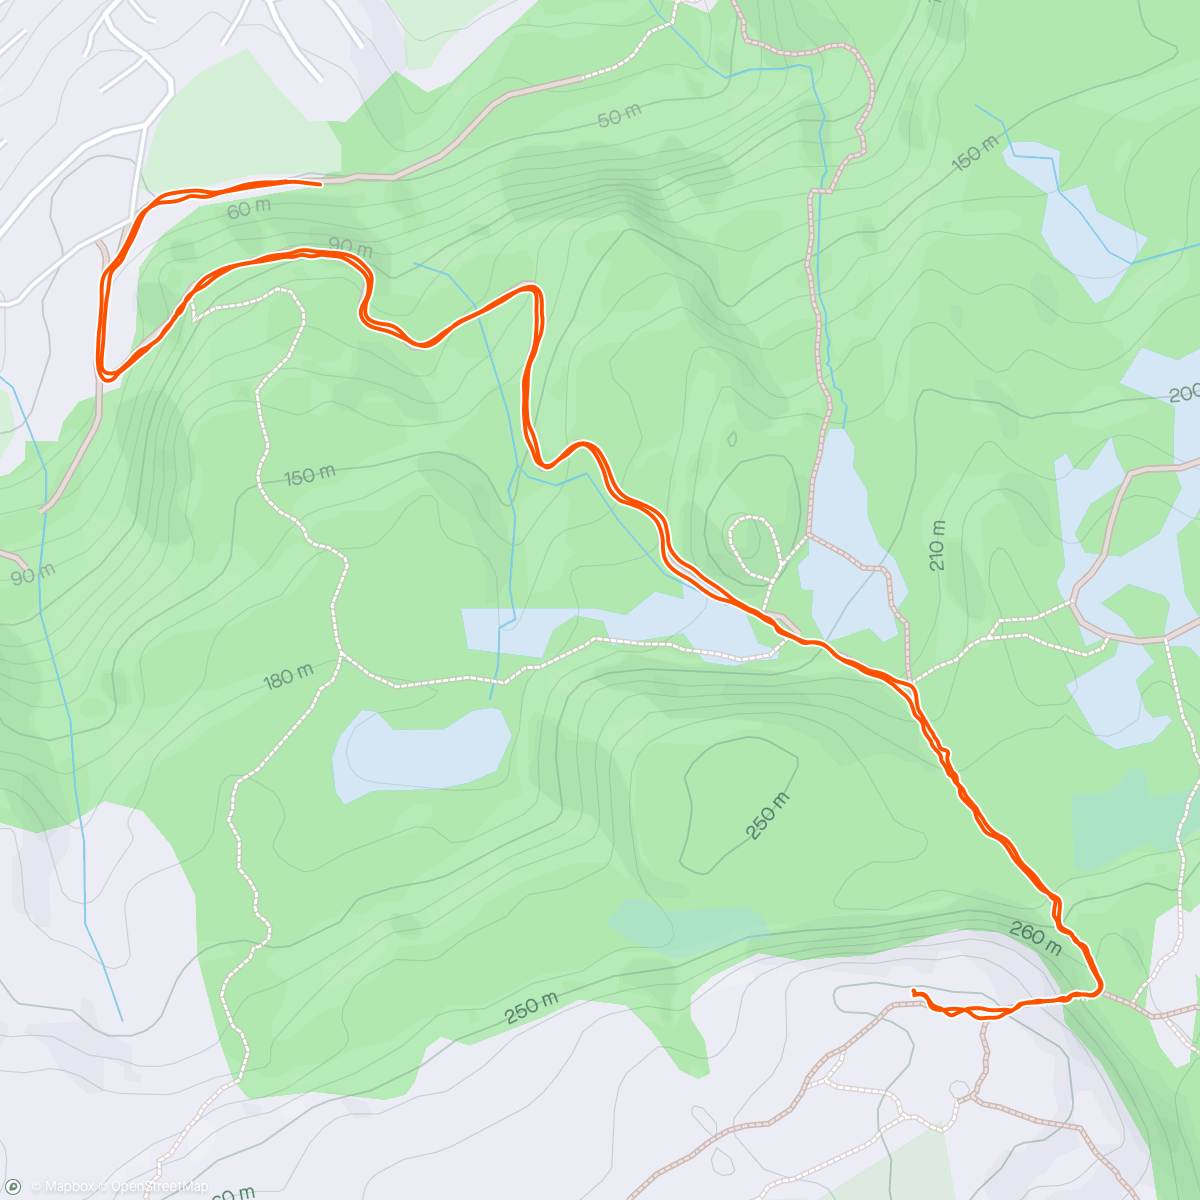 アクティビティ「Evening Trail Run」の地図